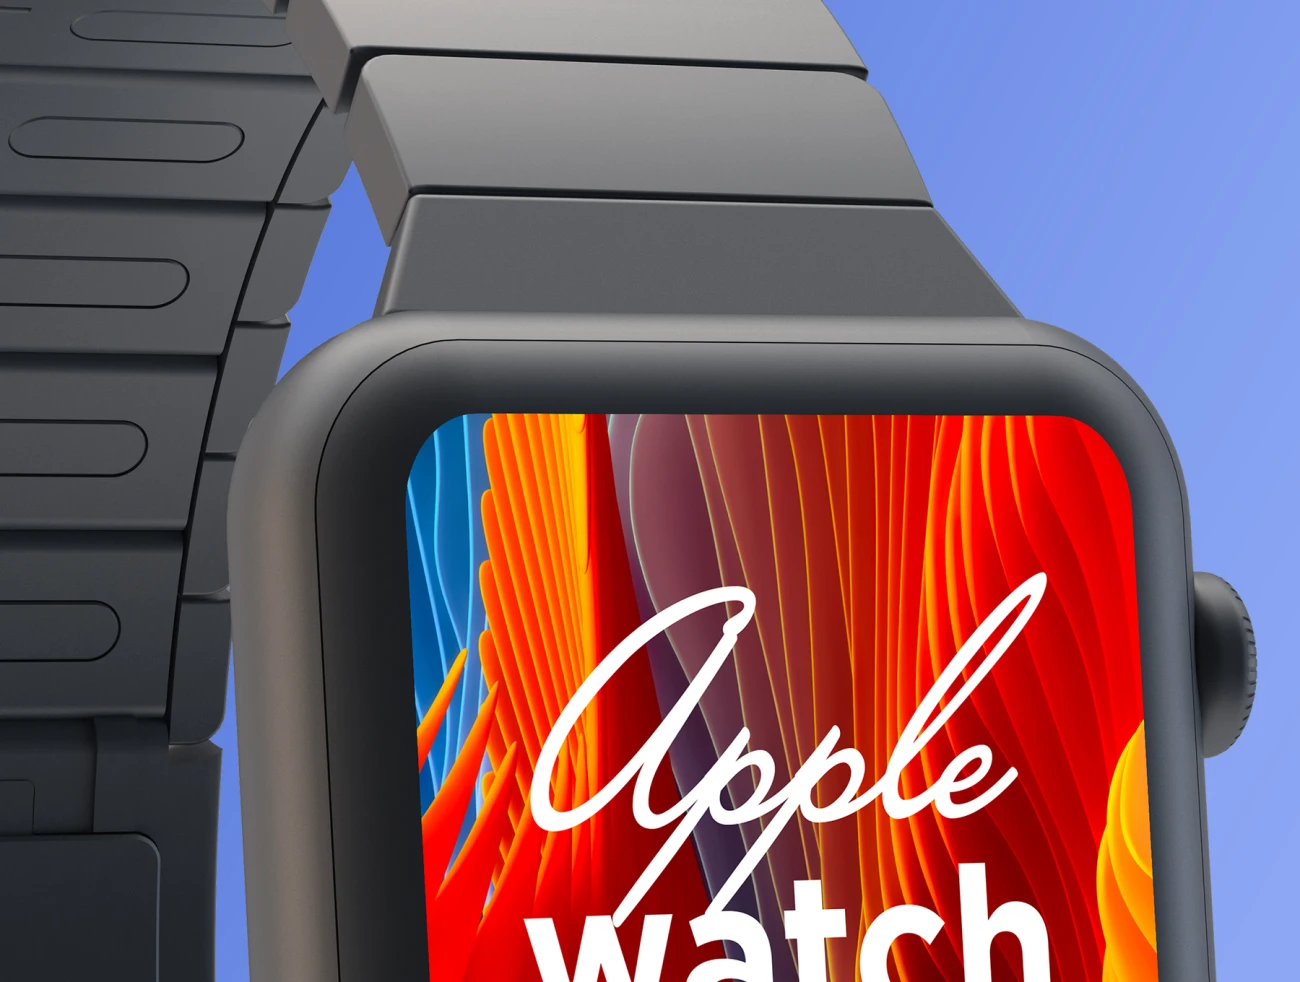 Apple Watch Series 4 Mockup 02 苹果手表4代智能样机-产品展示、手表样机、样机、简约样机、苹果设备-到位啦UI